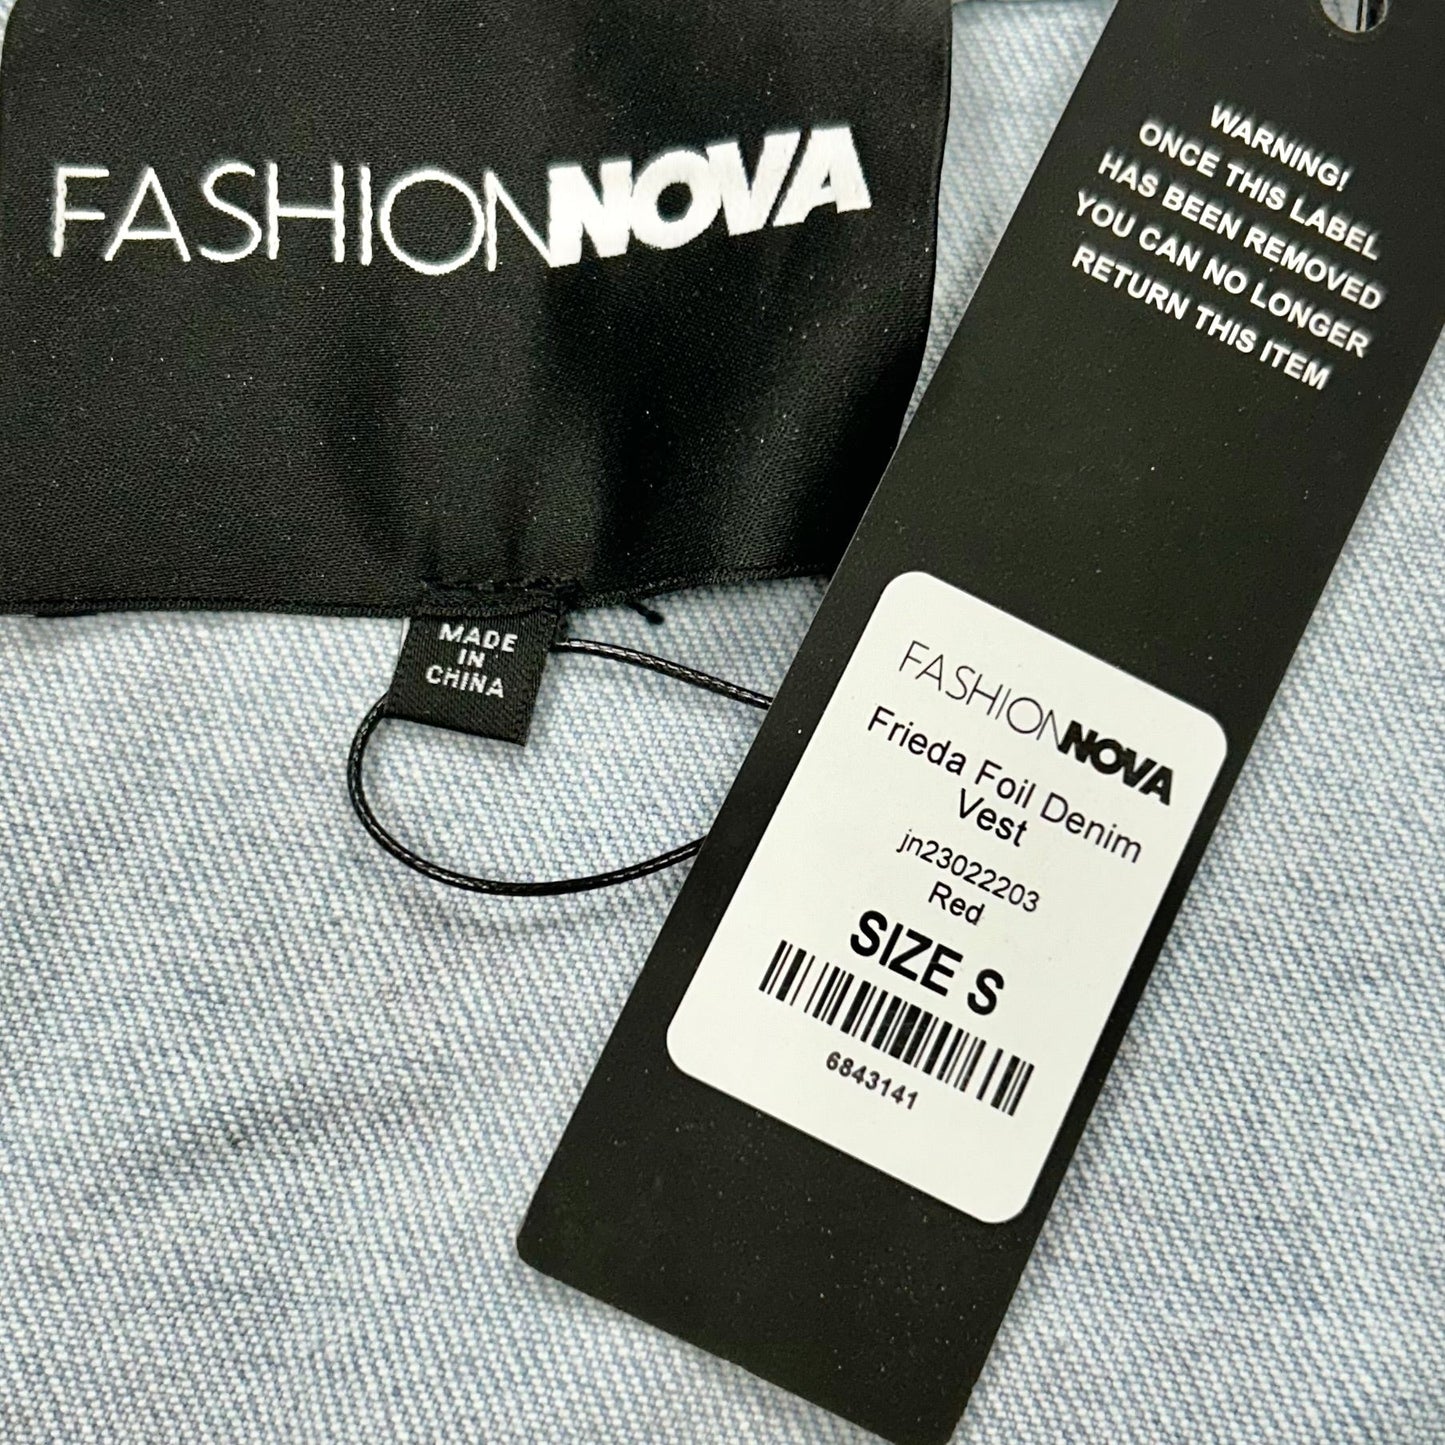 Vest Other By Fashion Nova  Size: S